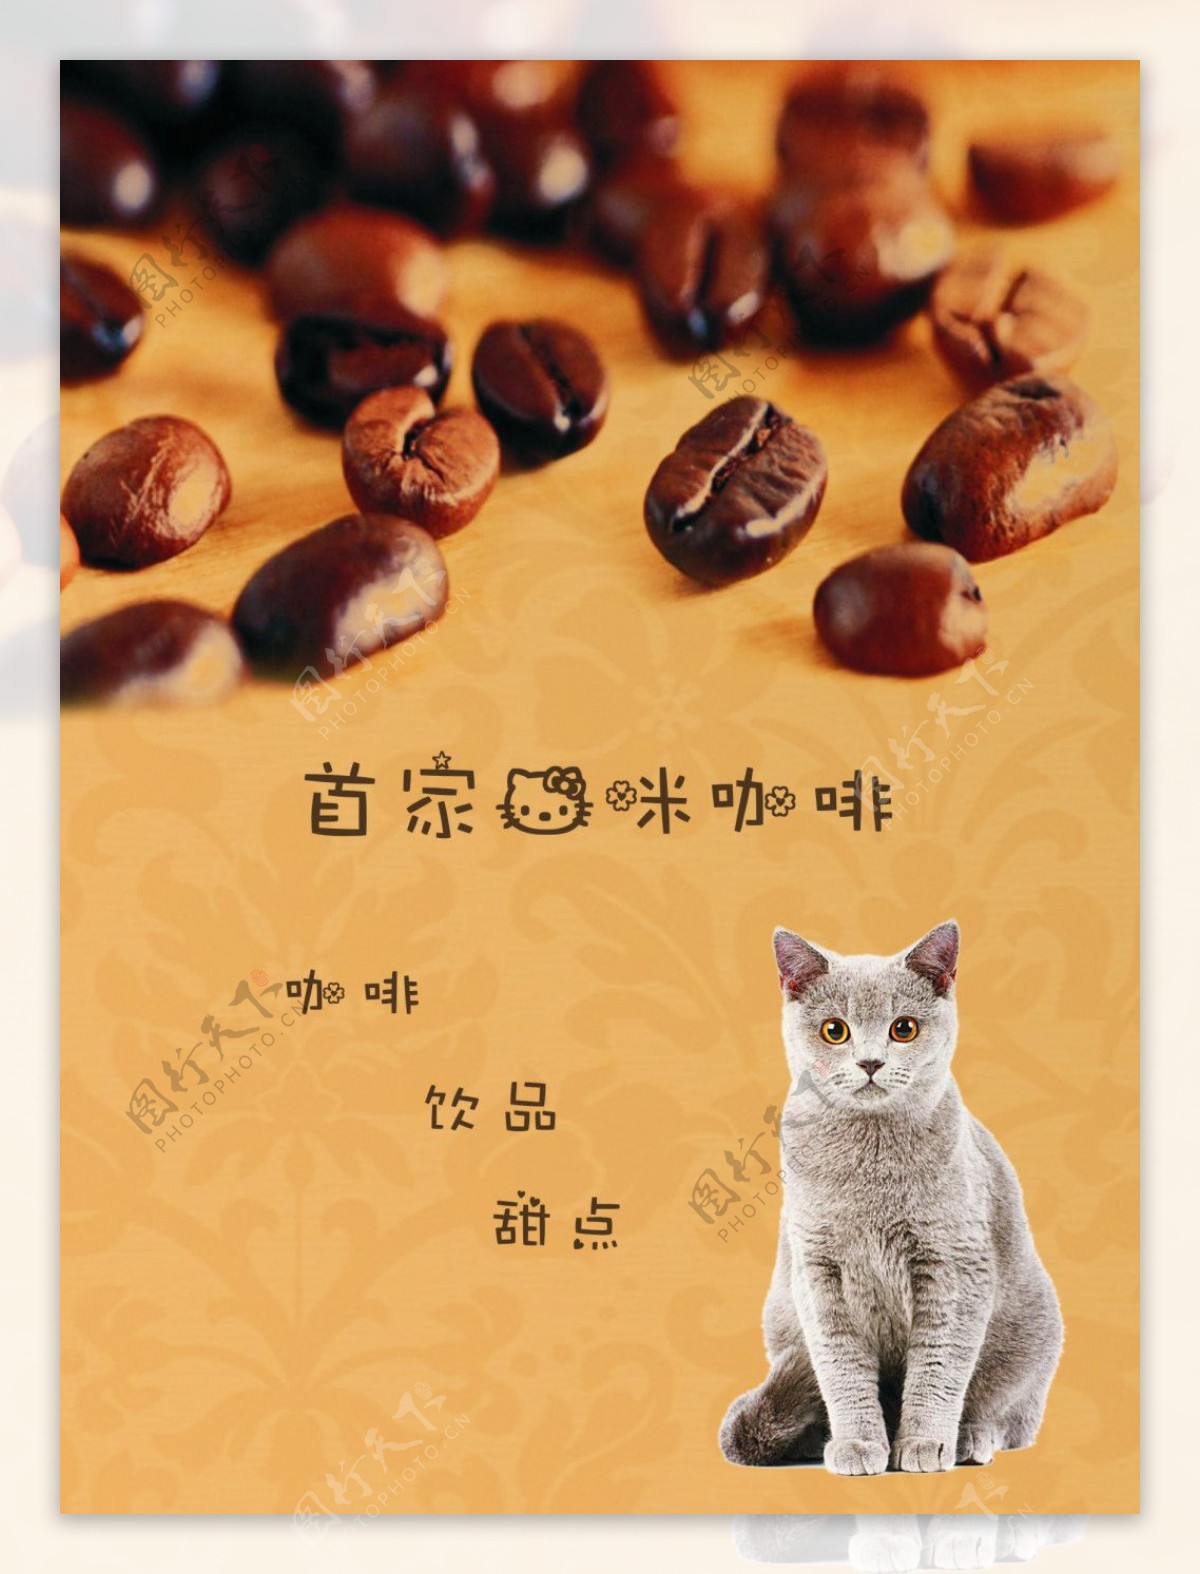 猫咪咖啡宣传单